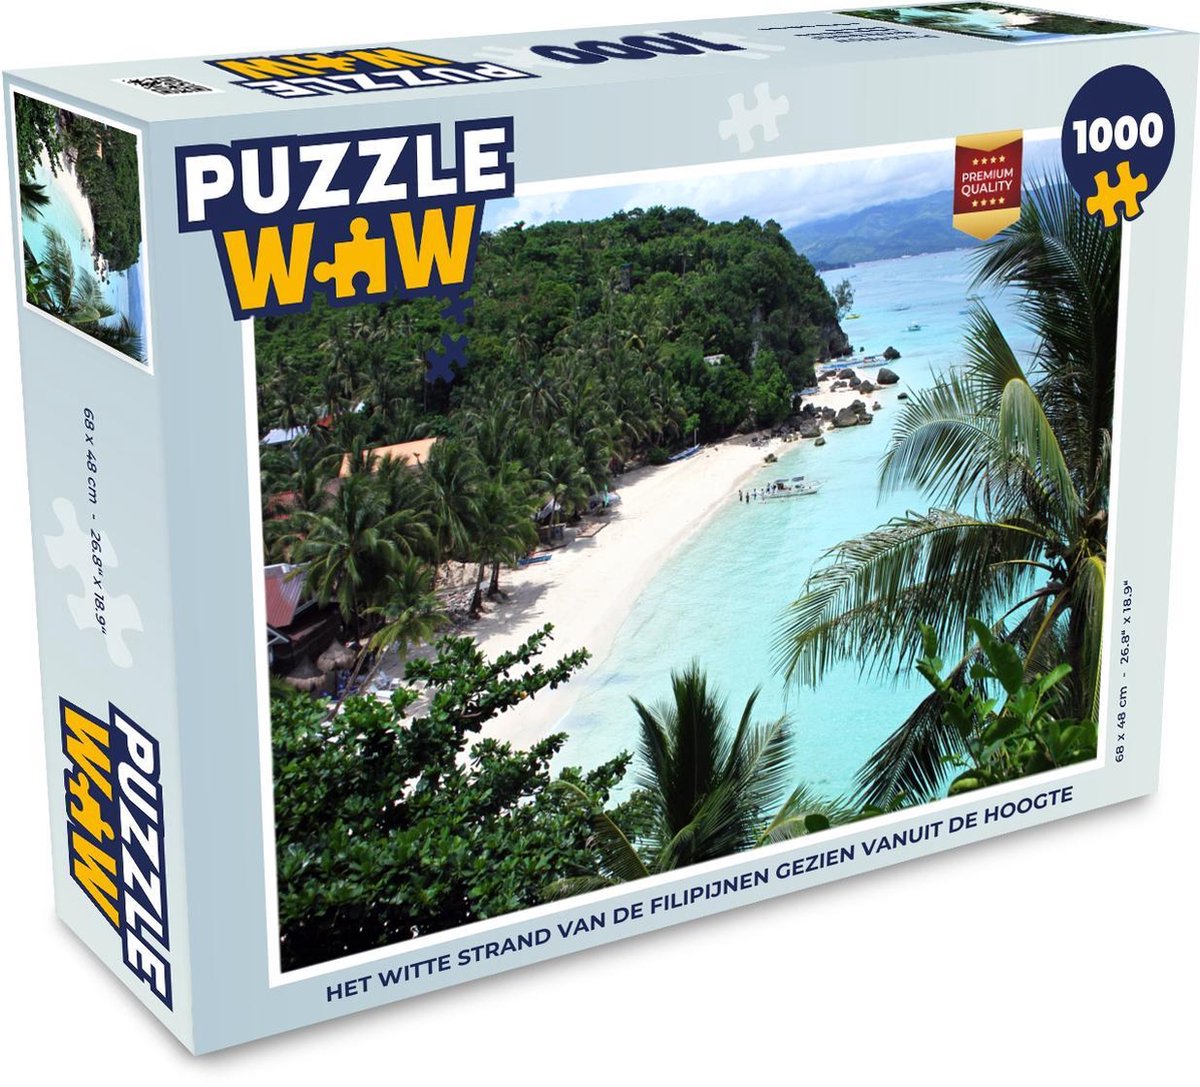 Afbeelding van product Puzzel 1000 stukjes volwassenen Filipijnen 1000 stukjes - Het witte strand van de Filipijnen gezien vanuit de hoogte - PuzzleWow heeft +100000 puzzels